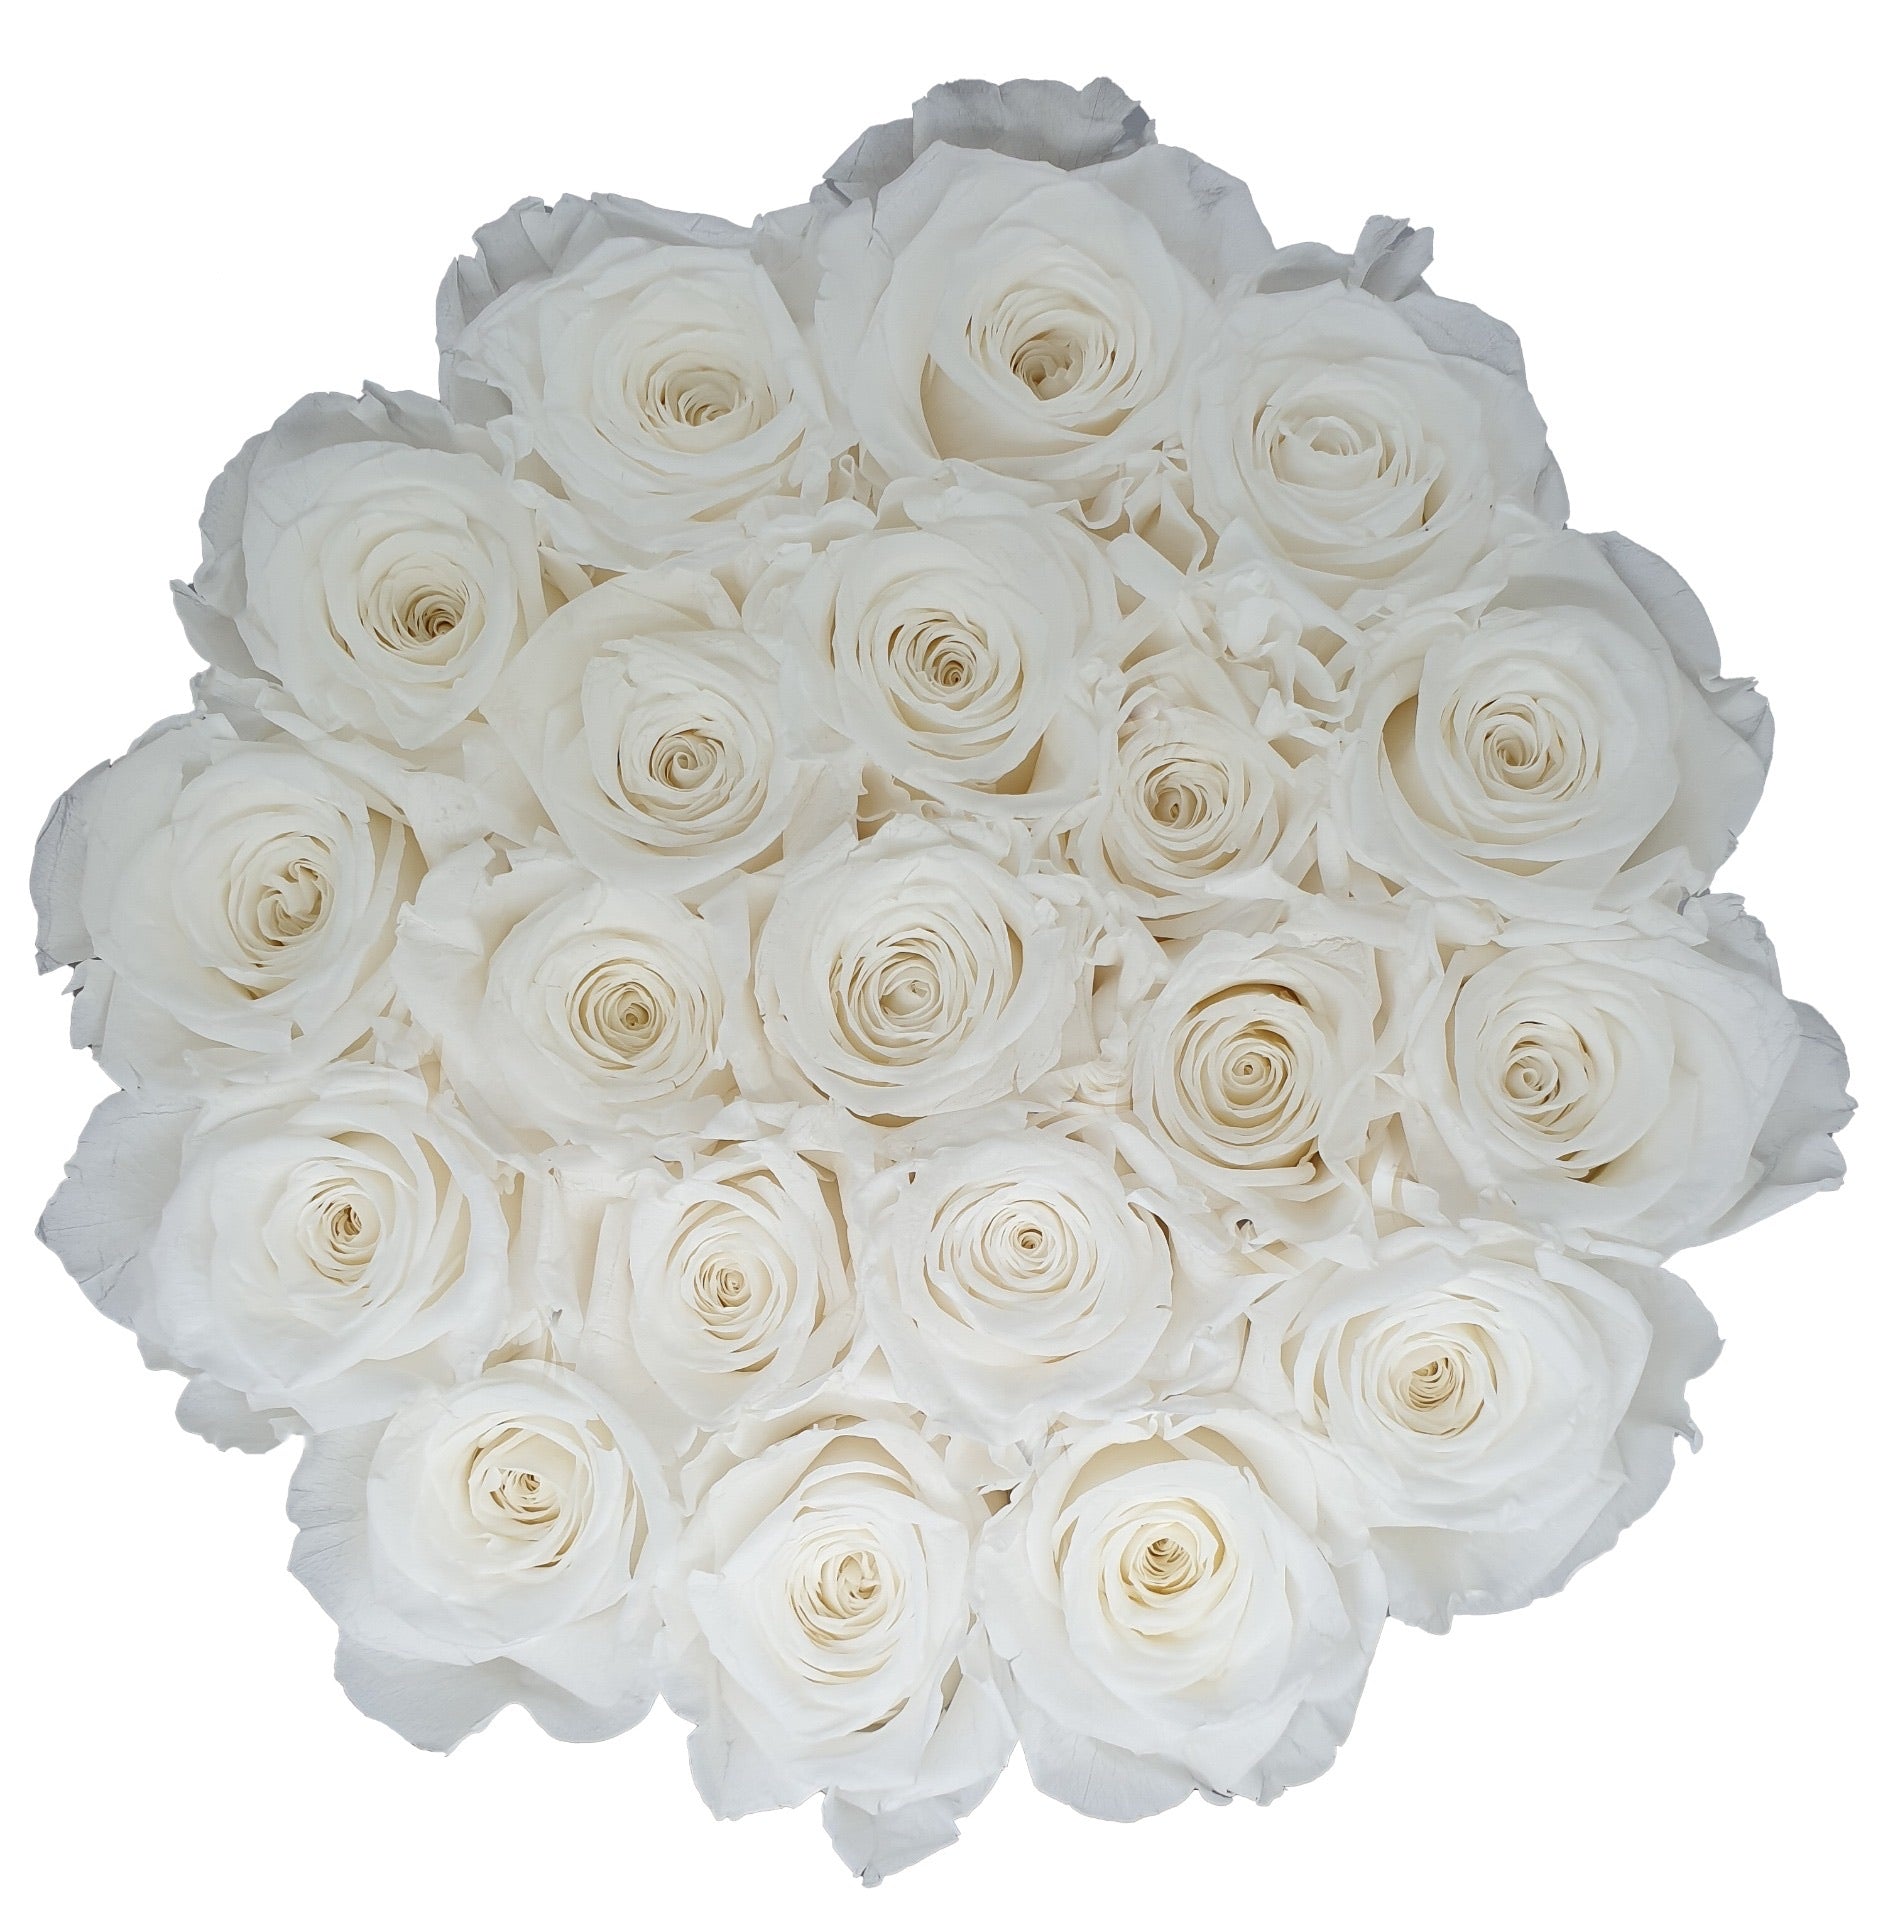 Flowerbox de Rosas Preservadas Brancas com Bombons Ferrero Rocher®